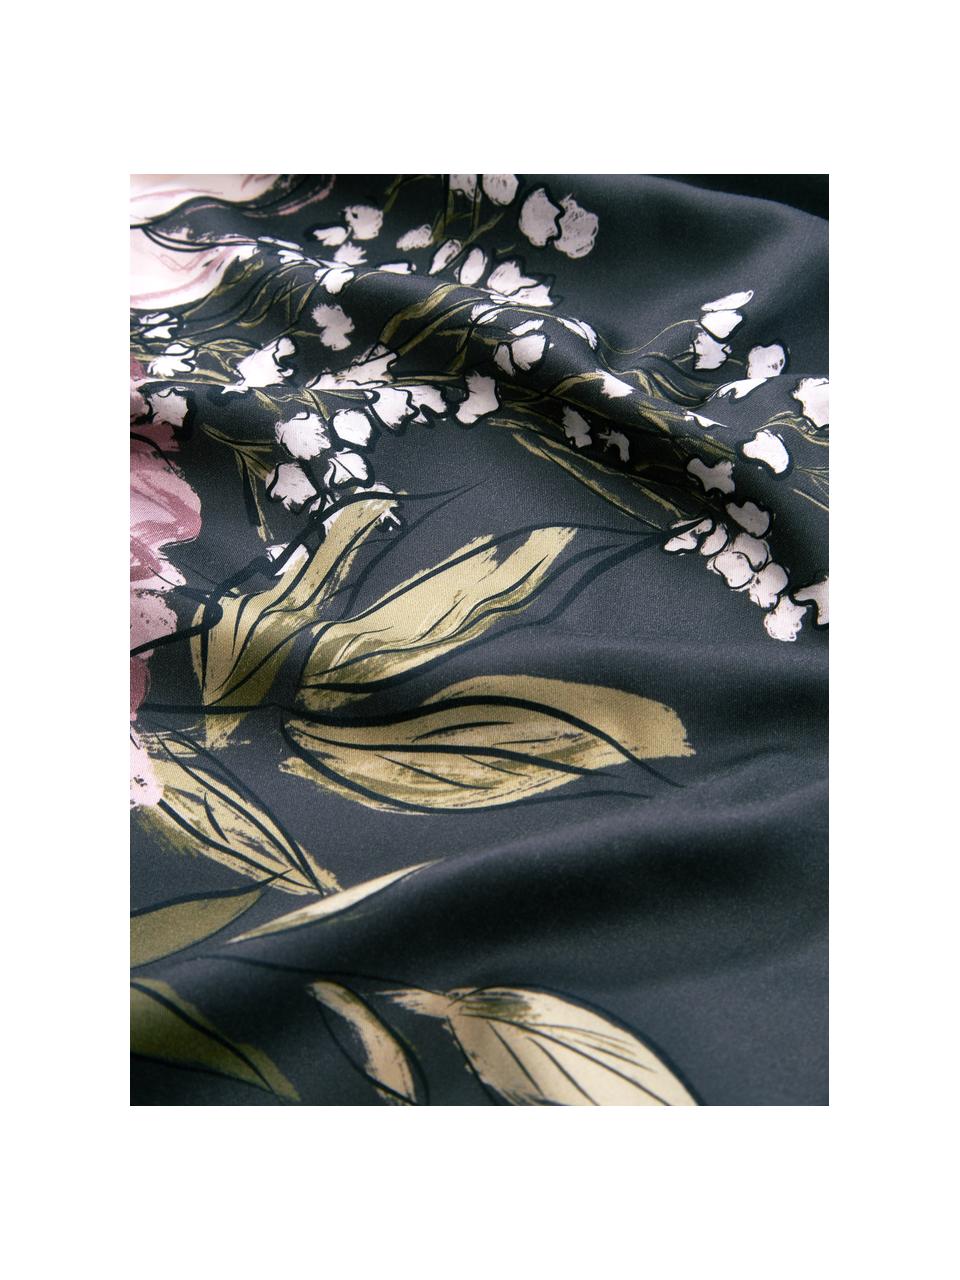 Baumwoll-Bettdeckenbezug Margot mit Blumen-Print in Dunkelblau, Webart: Baumwolle Fadendichte 210, Dunkelblau/Beige, B 200 x L 200 cm